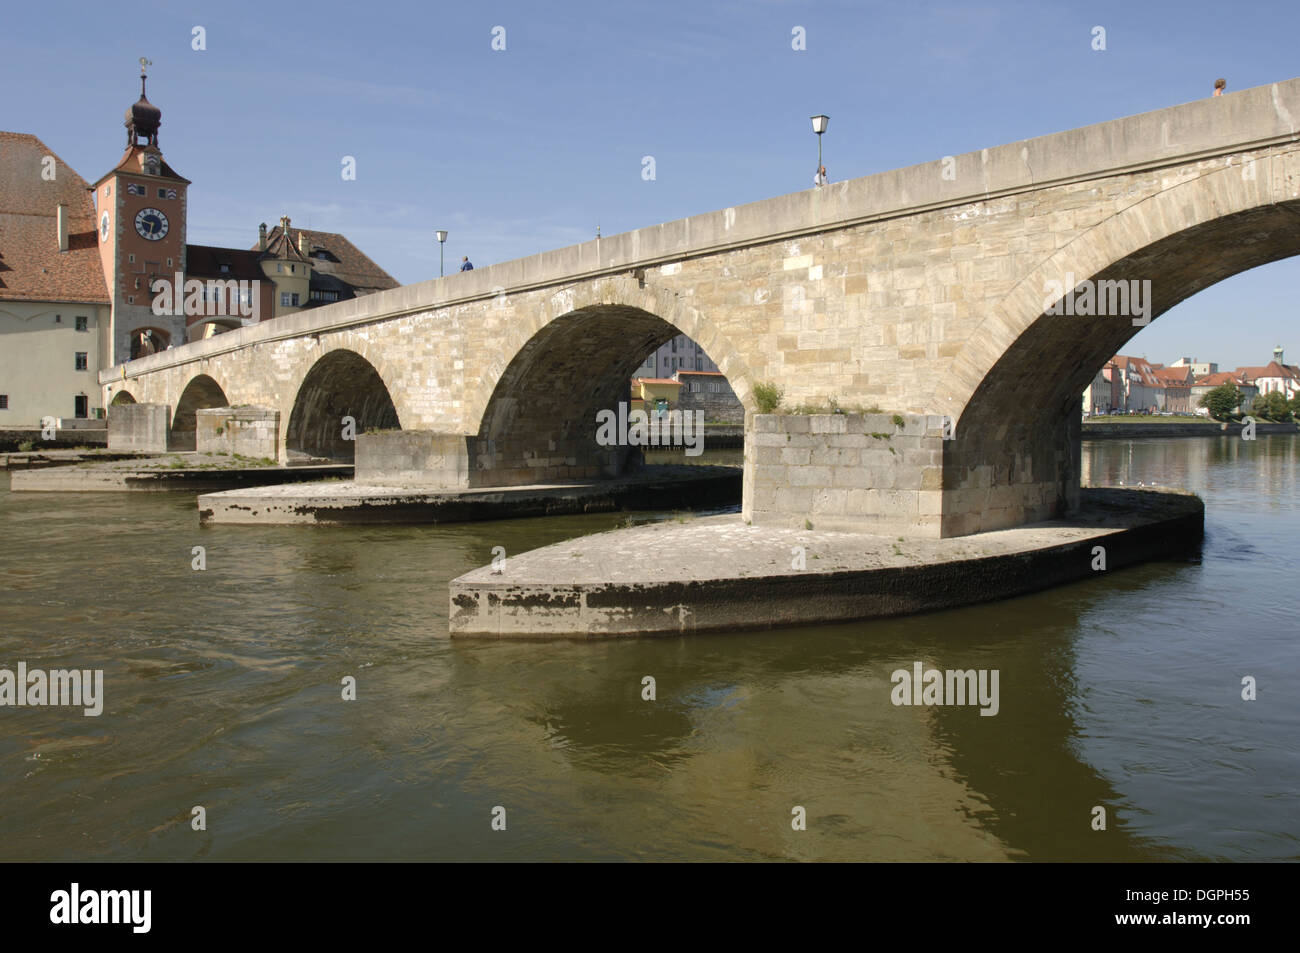 german city regensburg with old stone bridge Stock Photo